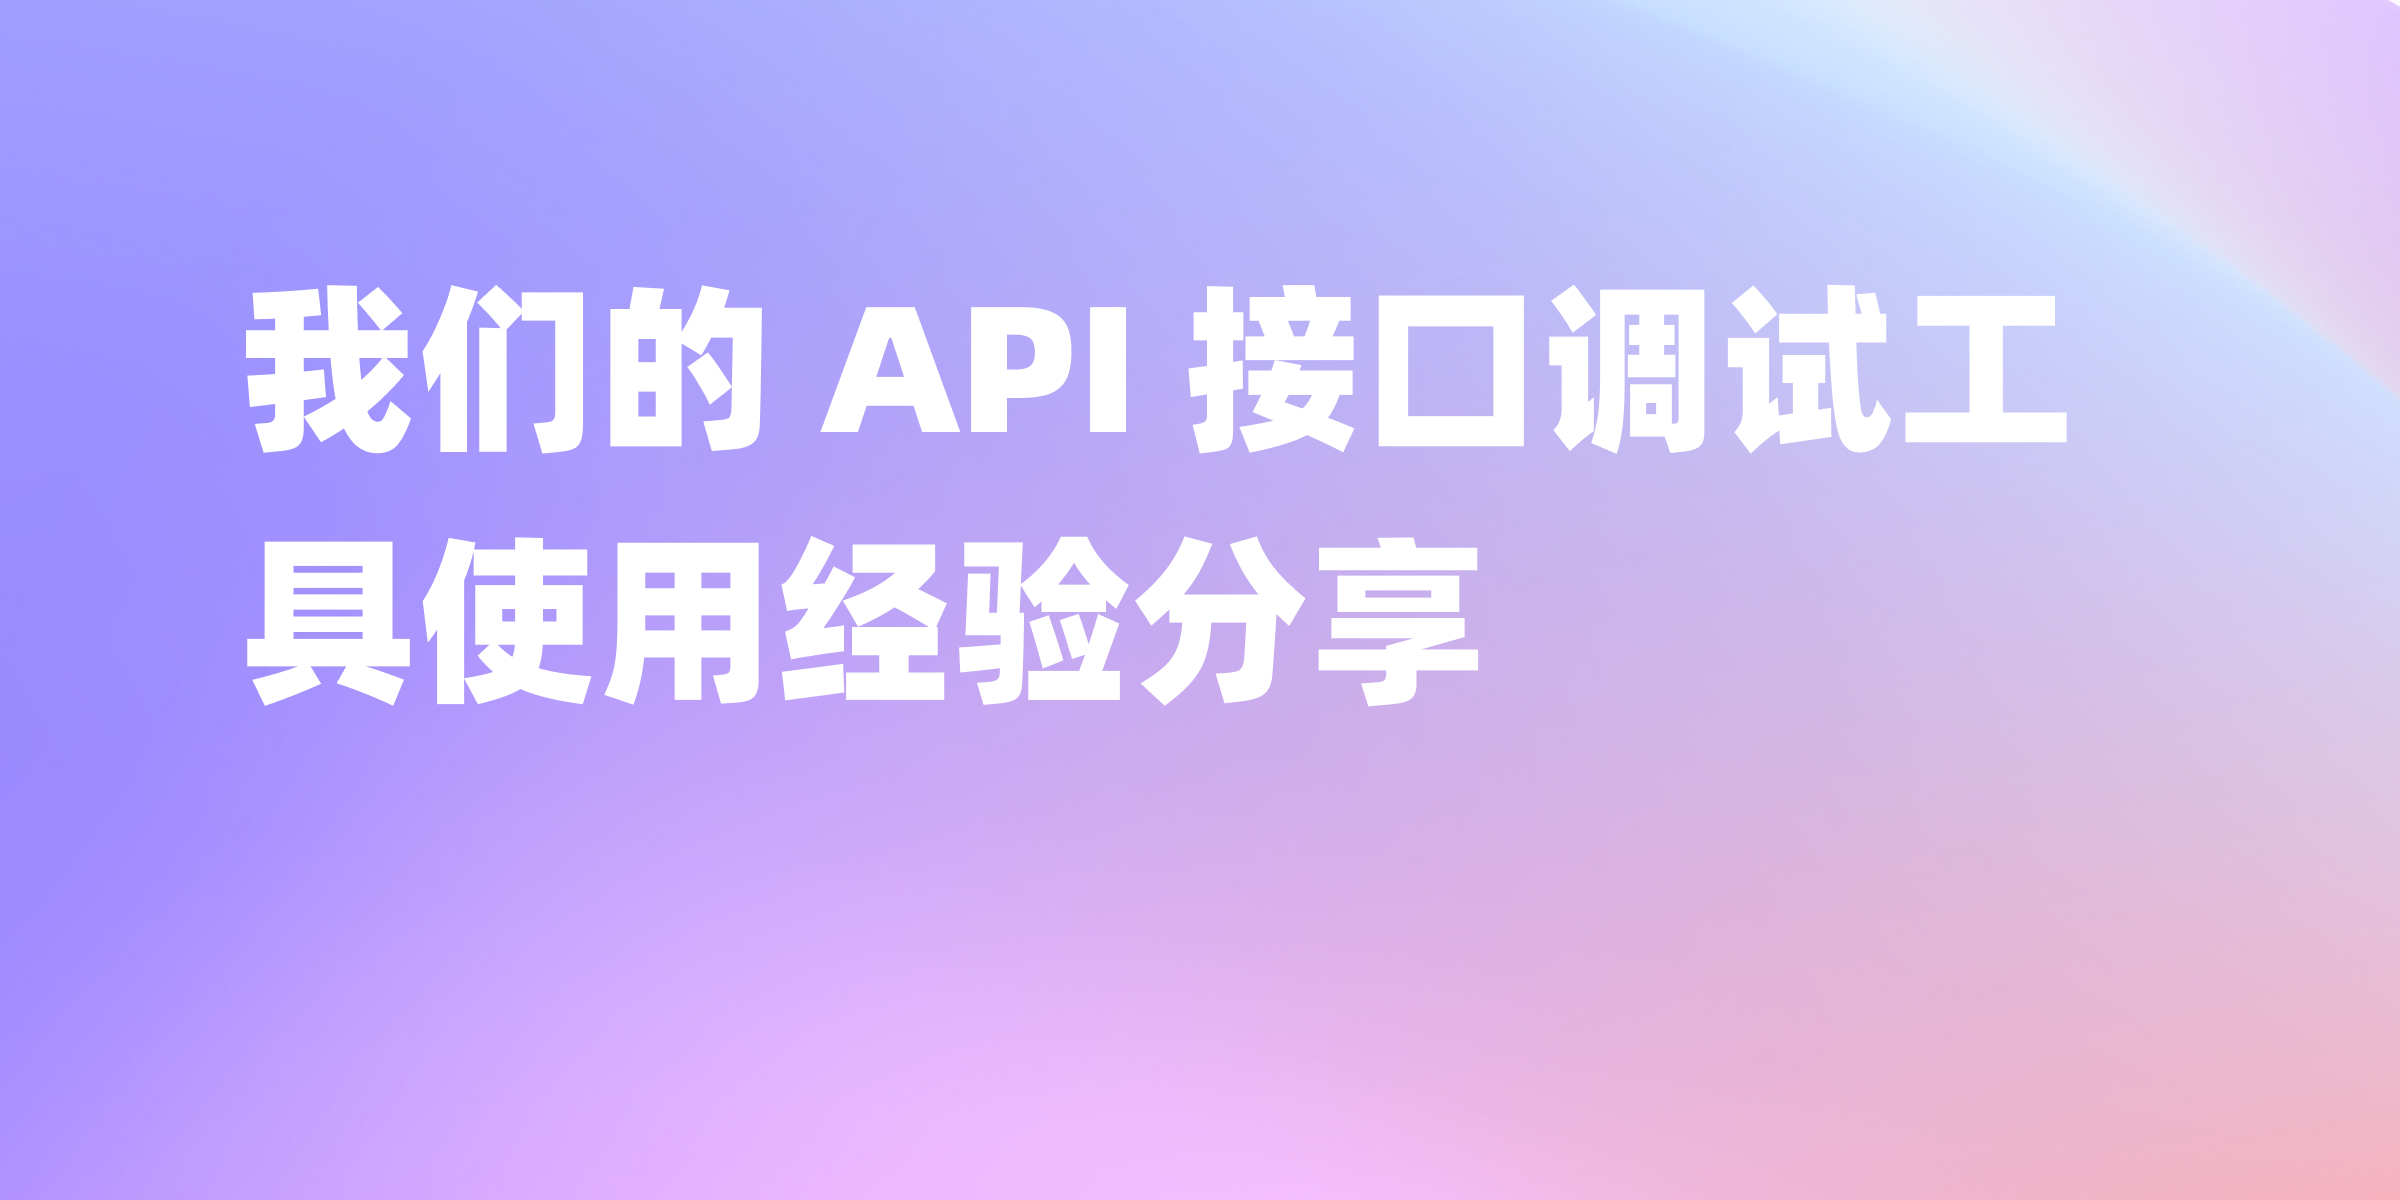 Apifox: 我们团队深入使用两年的 API 接口调试工具